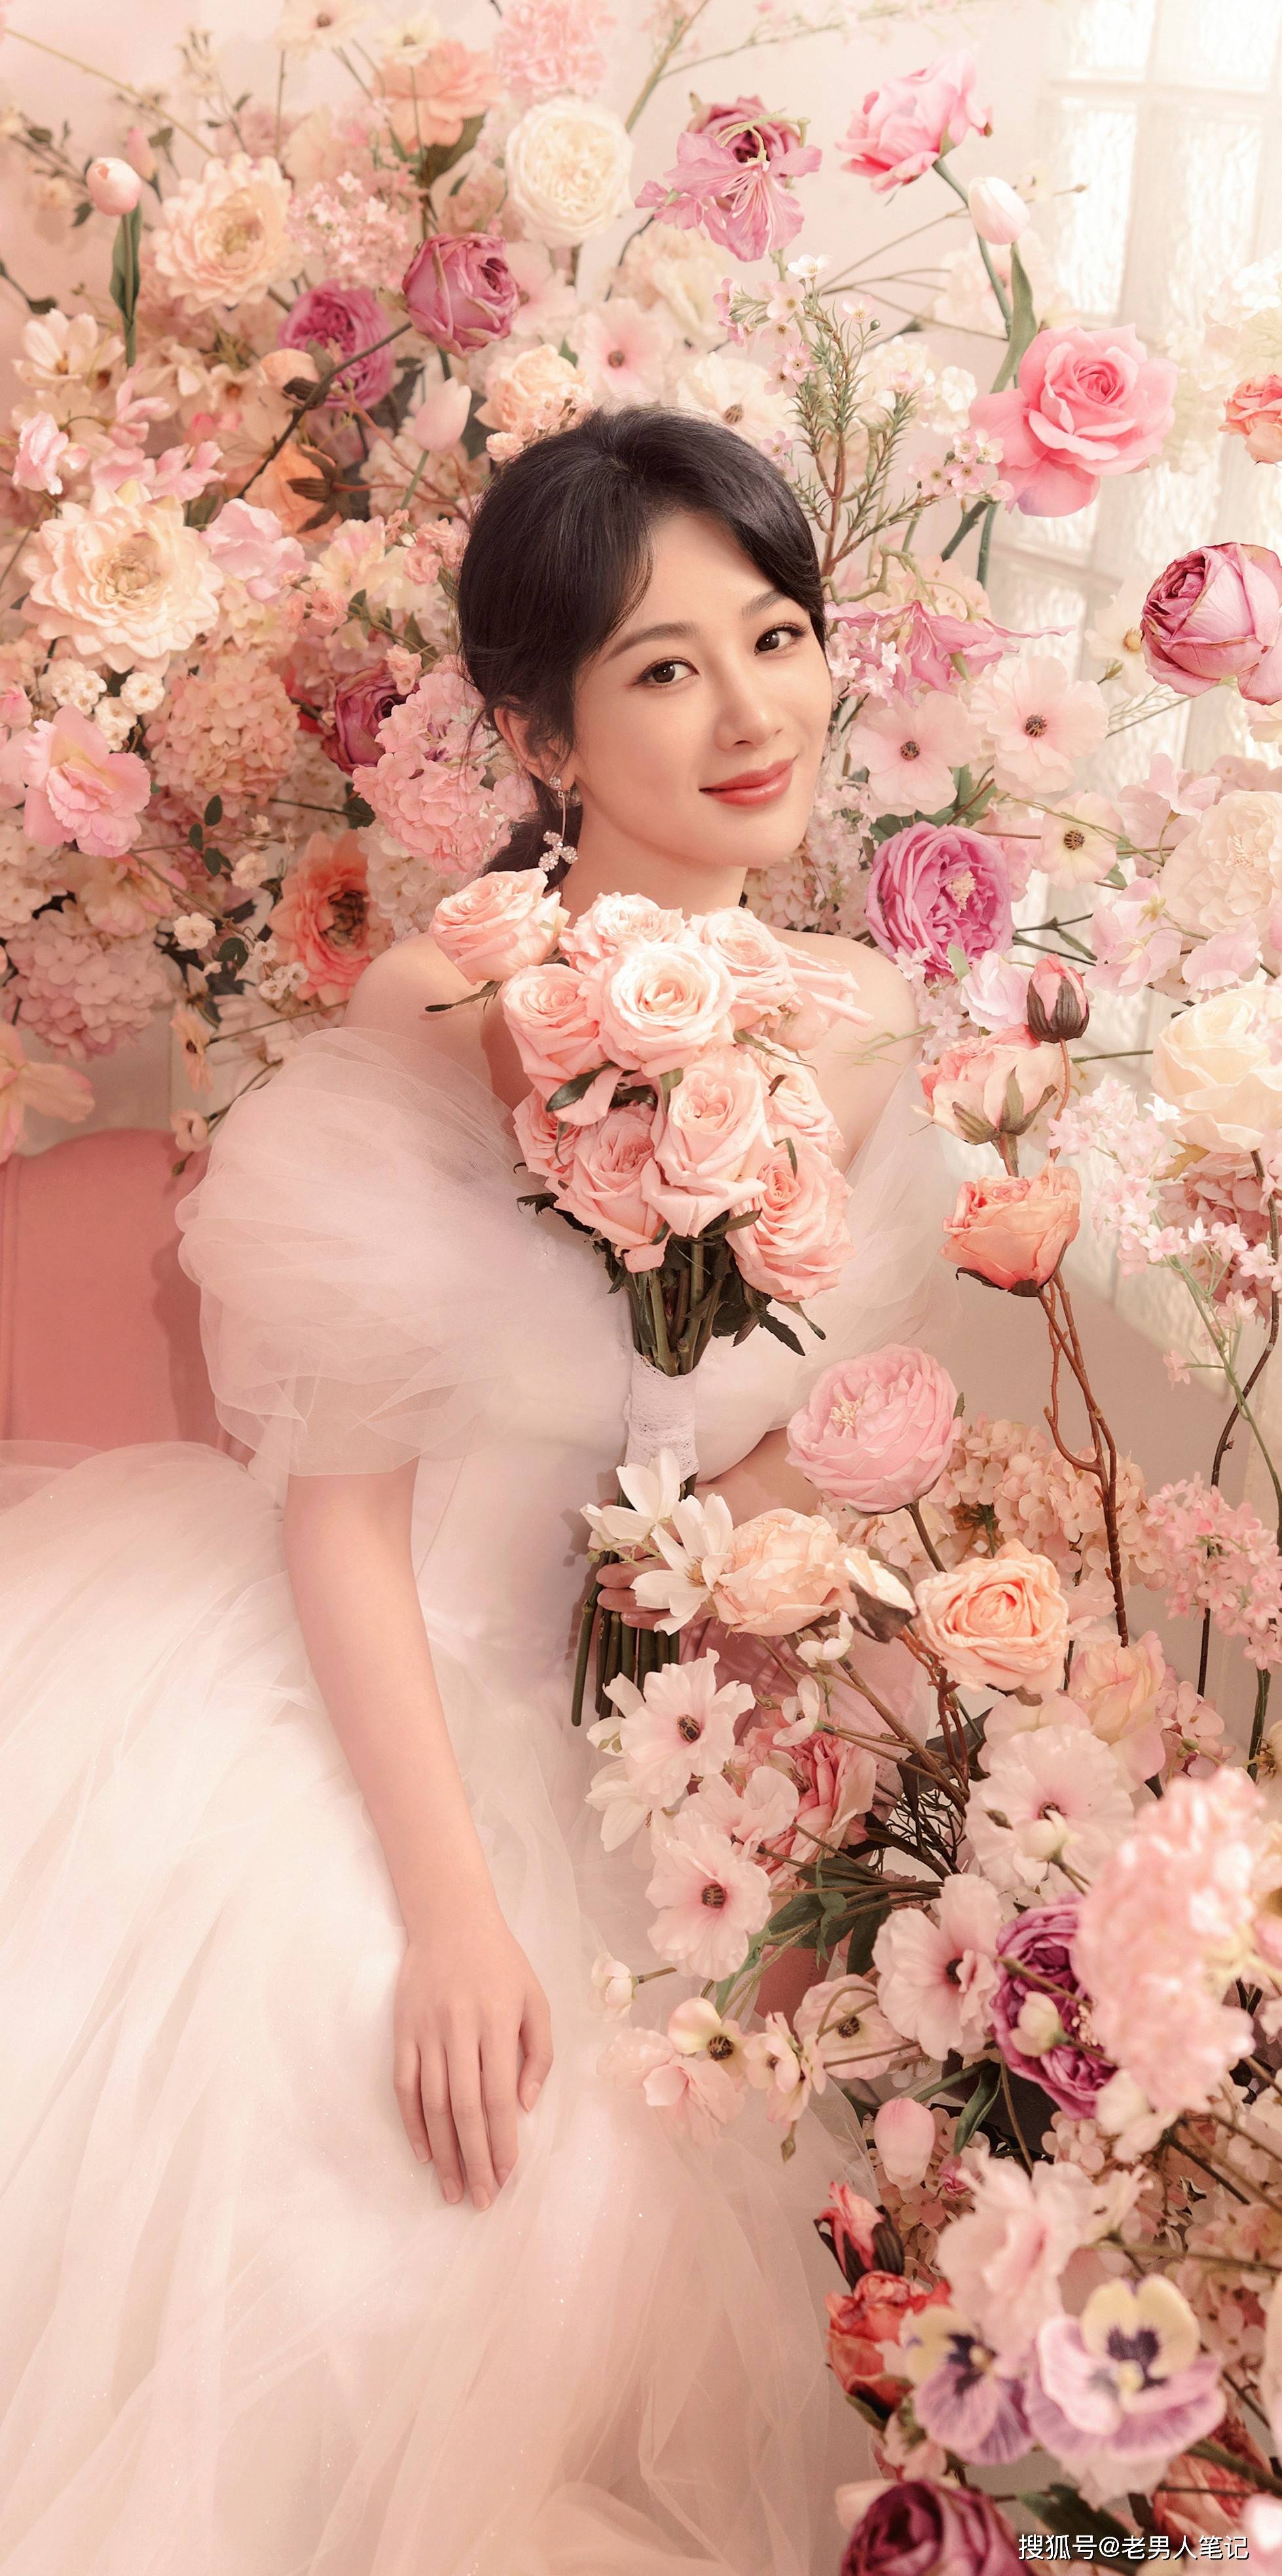 杨紫520婚纱大片,玫瑰粉氛围浪漫唯美,勾勒轻盈曼妙姿态